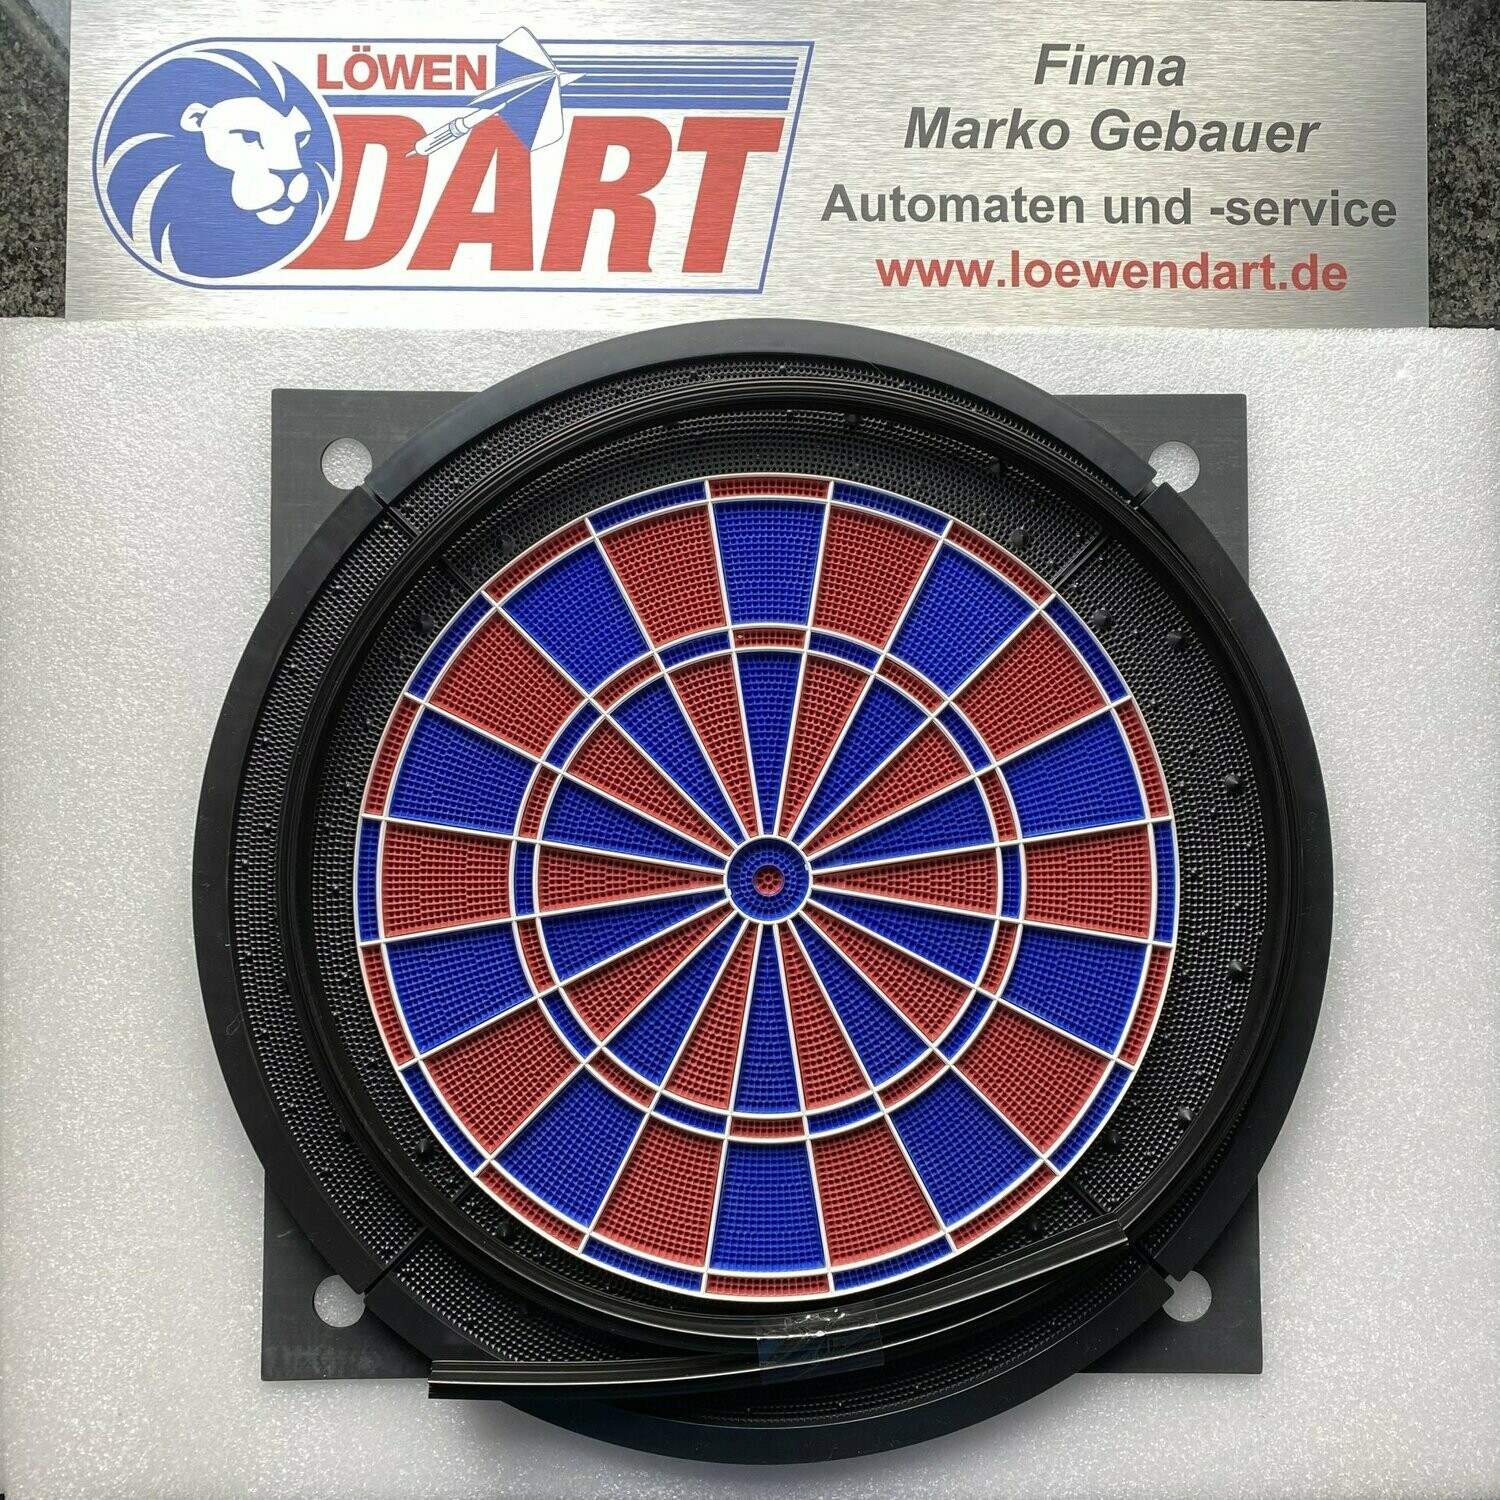 Original Löwen Dart Komplett-Set Z213000-1